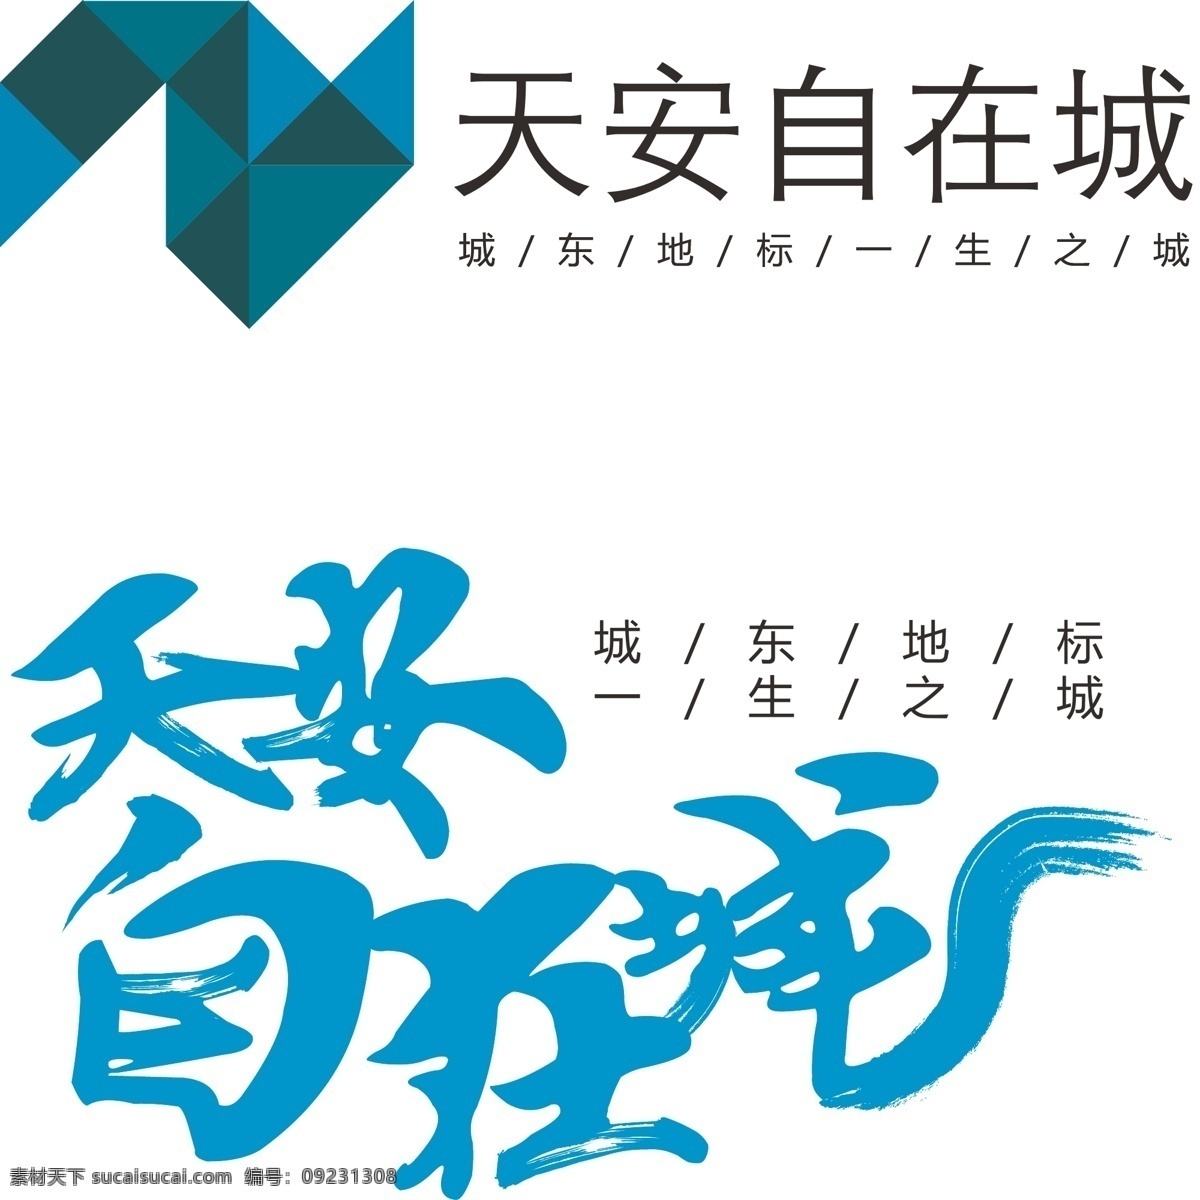 地产 logo logo设计 笔刷 扁平化 变形 科技感 色块 异型 中国风 折纸 矢量图